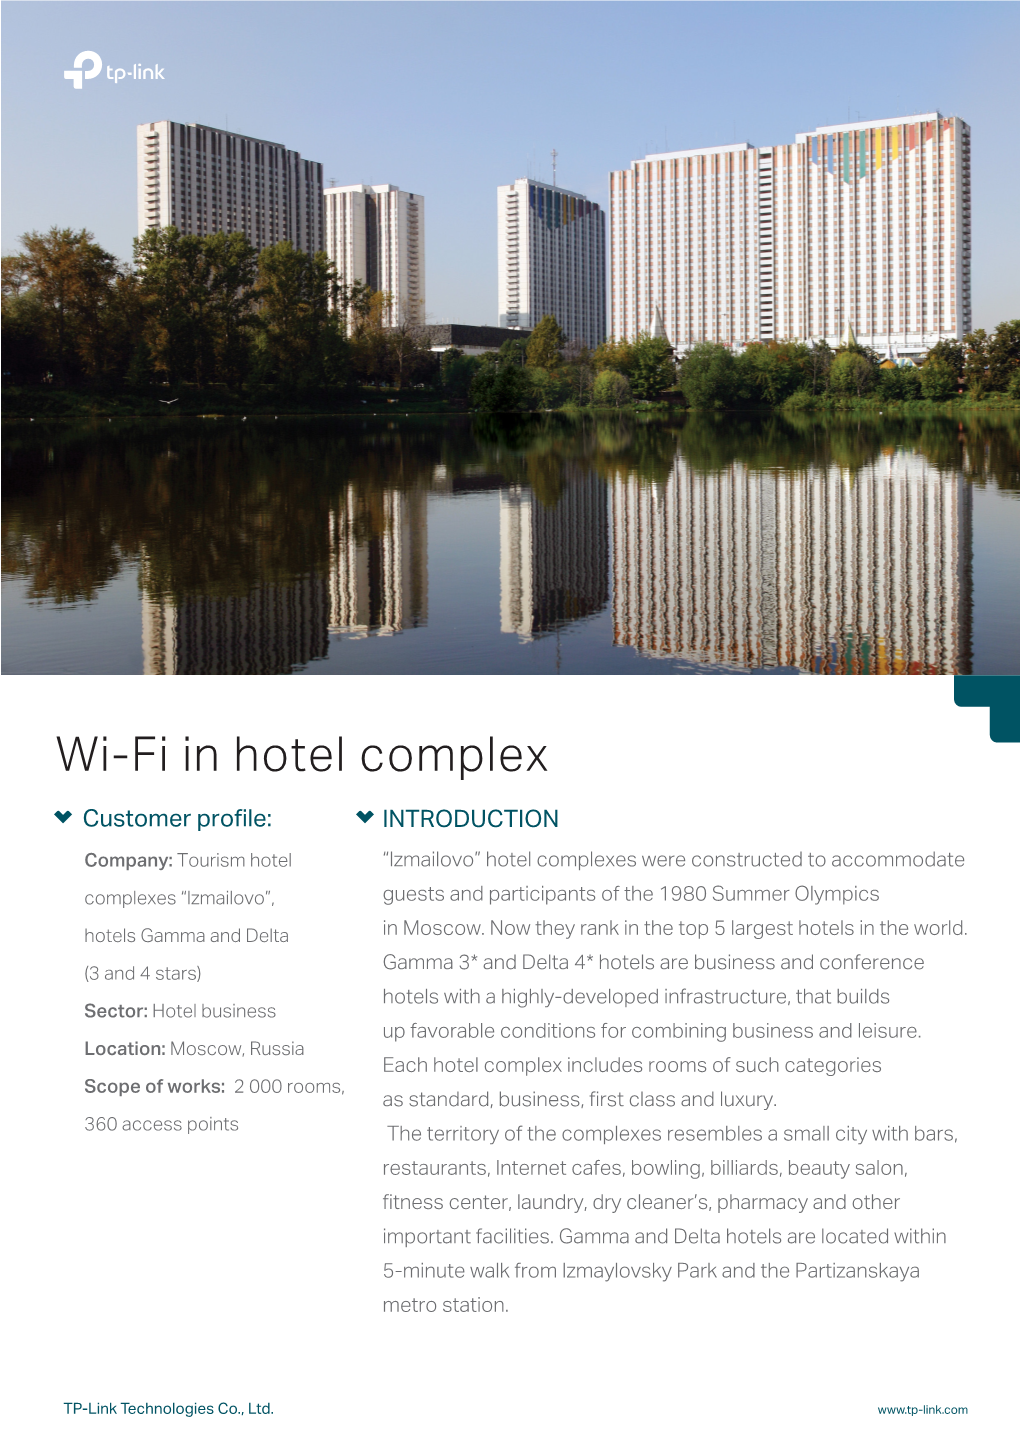 Wi-Fi in Hotel Complex